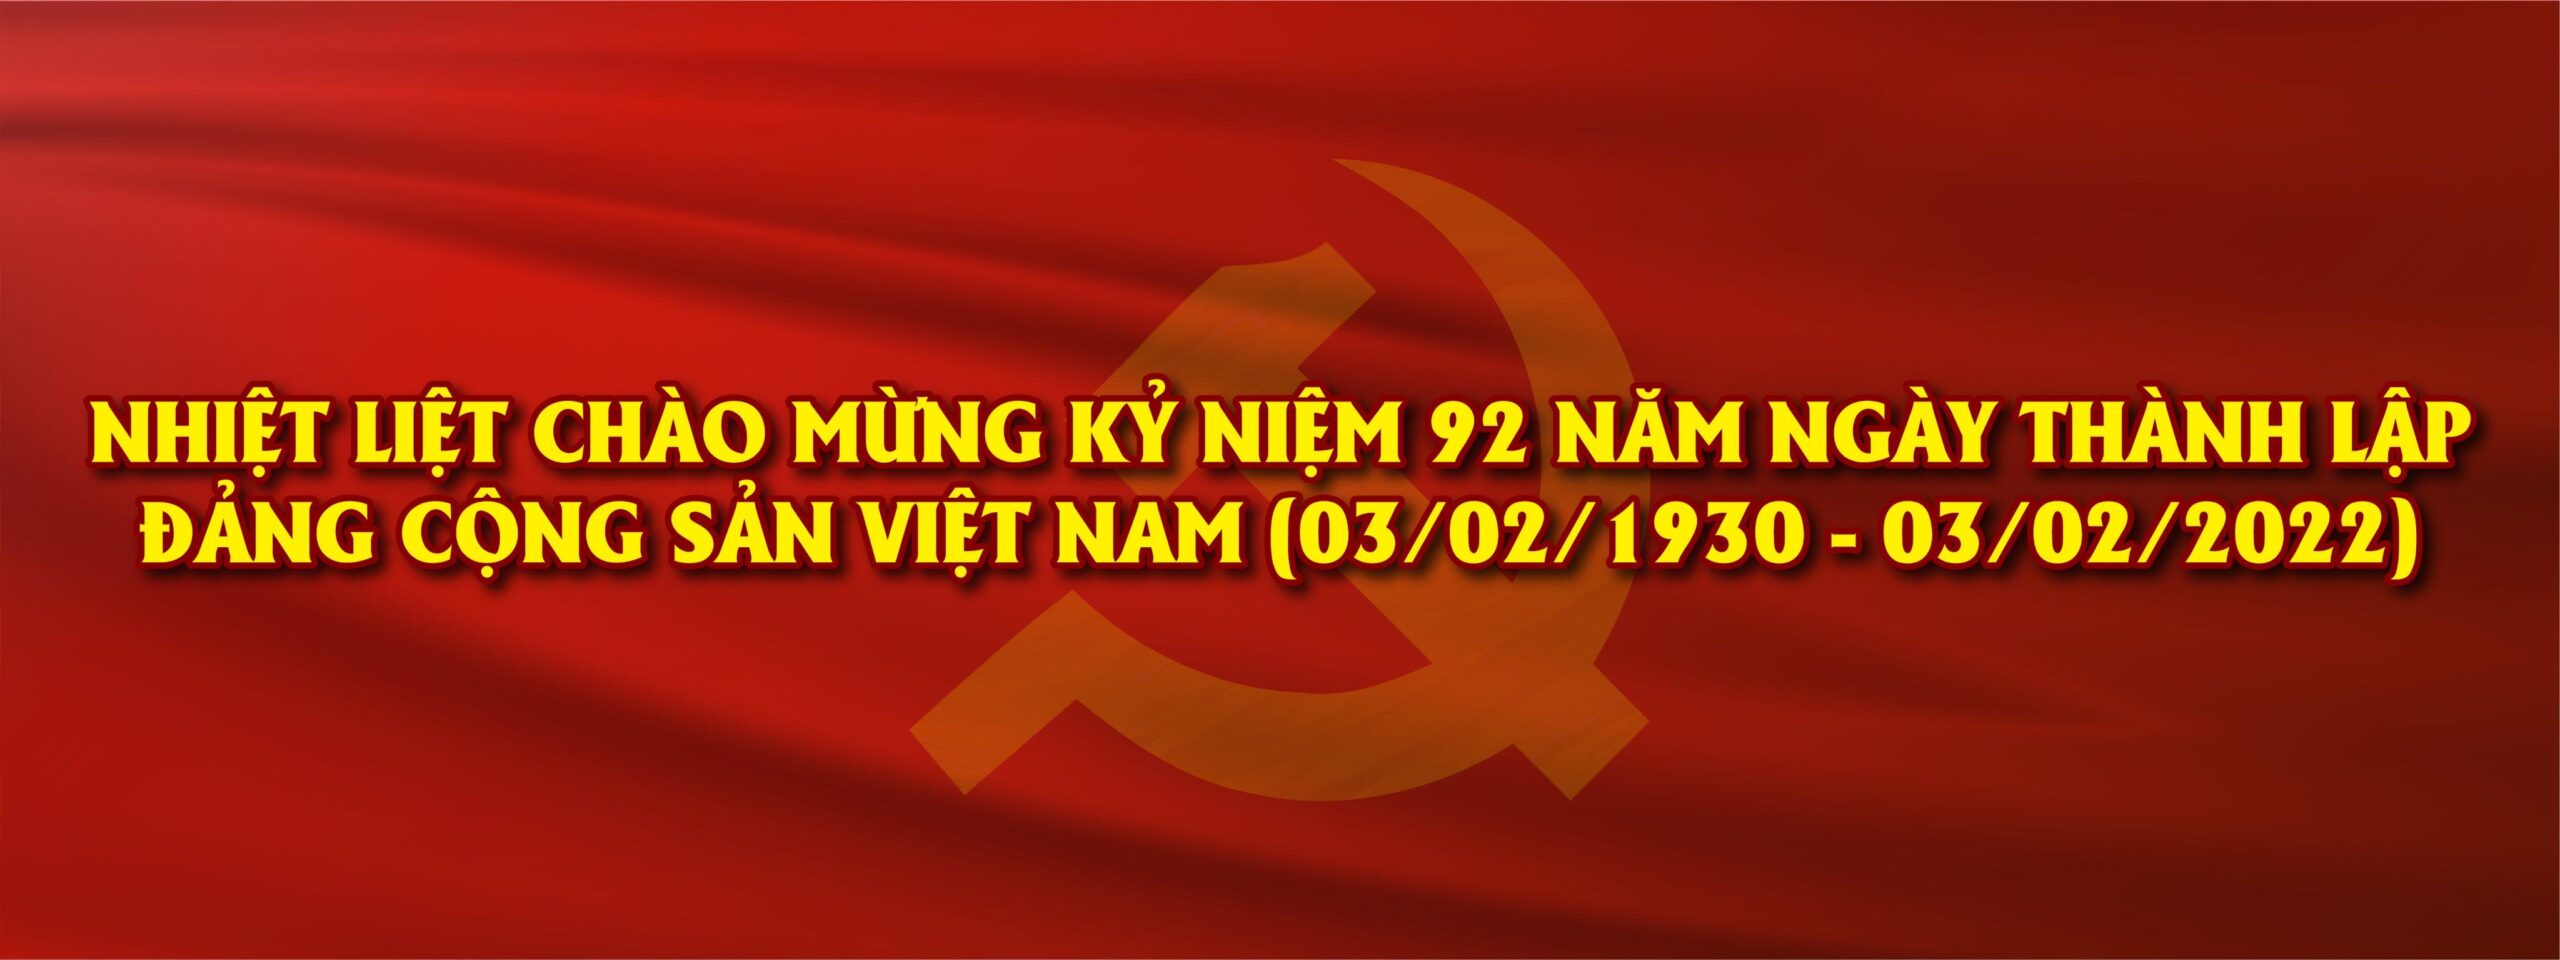 Bối cảnh ra đời Đảng Cộng sản Việt Nam